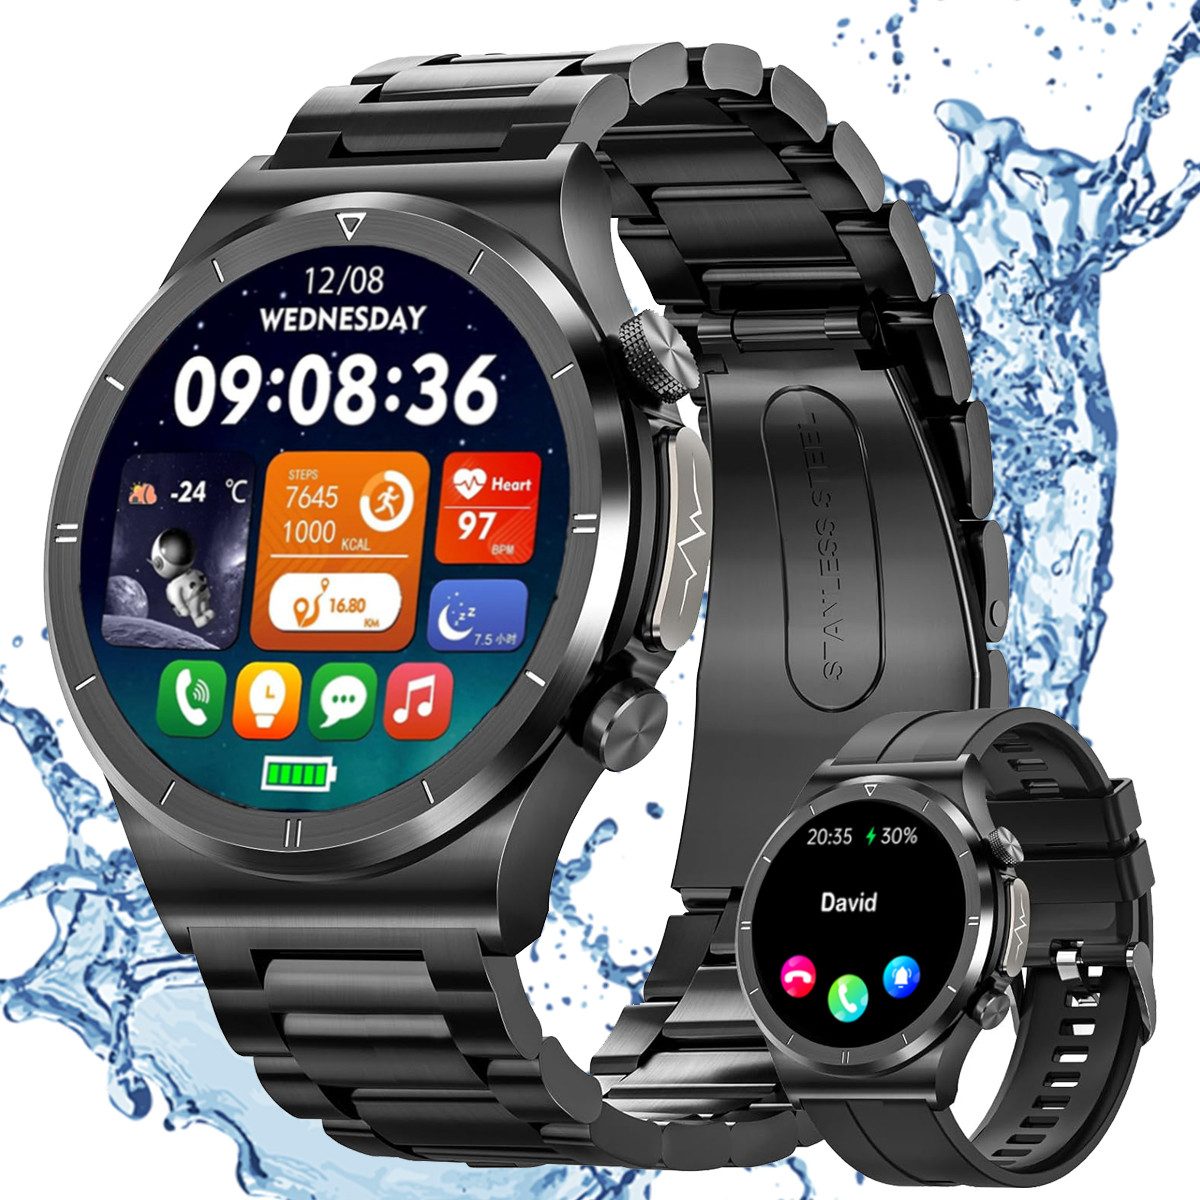 Powerwill Smartwatch Herren (Anruf Texte Rinnerung),1,39 Zoll Smartwatch, Robuste Outdoor Smartwatch mit Herzfrequenz Schlafüberwachung, 100+ Sportmodi Fitnessuhr Smart Watch für Android iOS, Schwarz